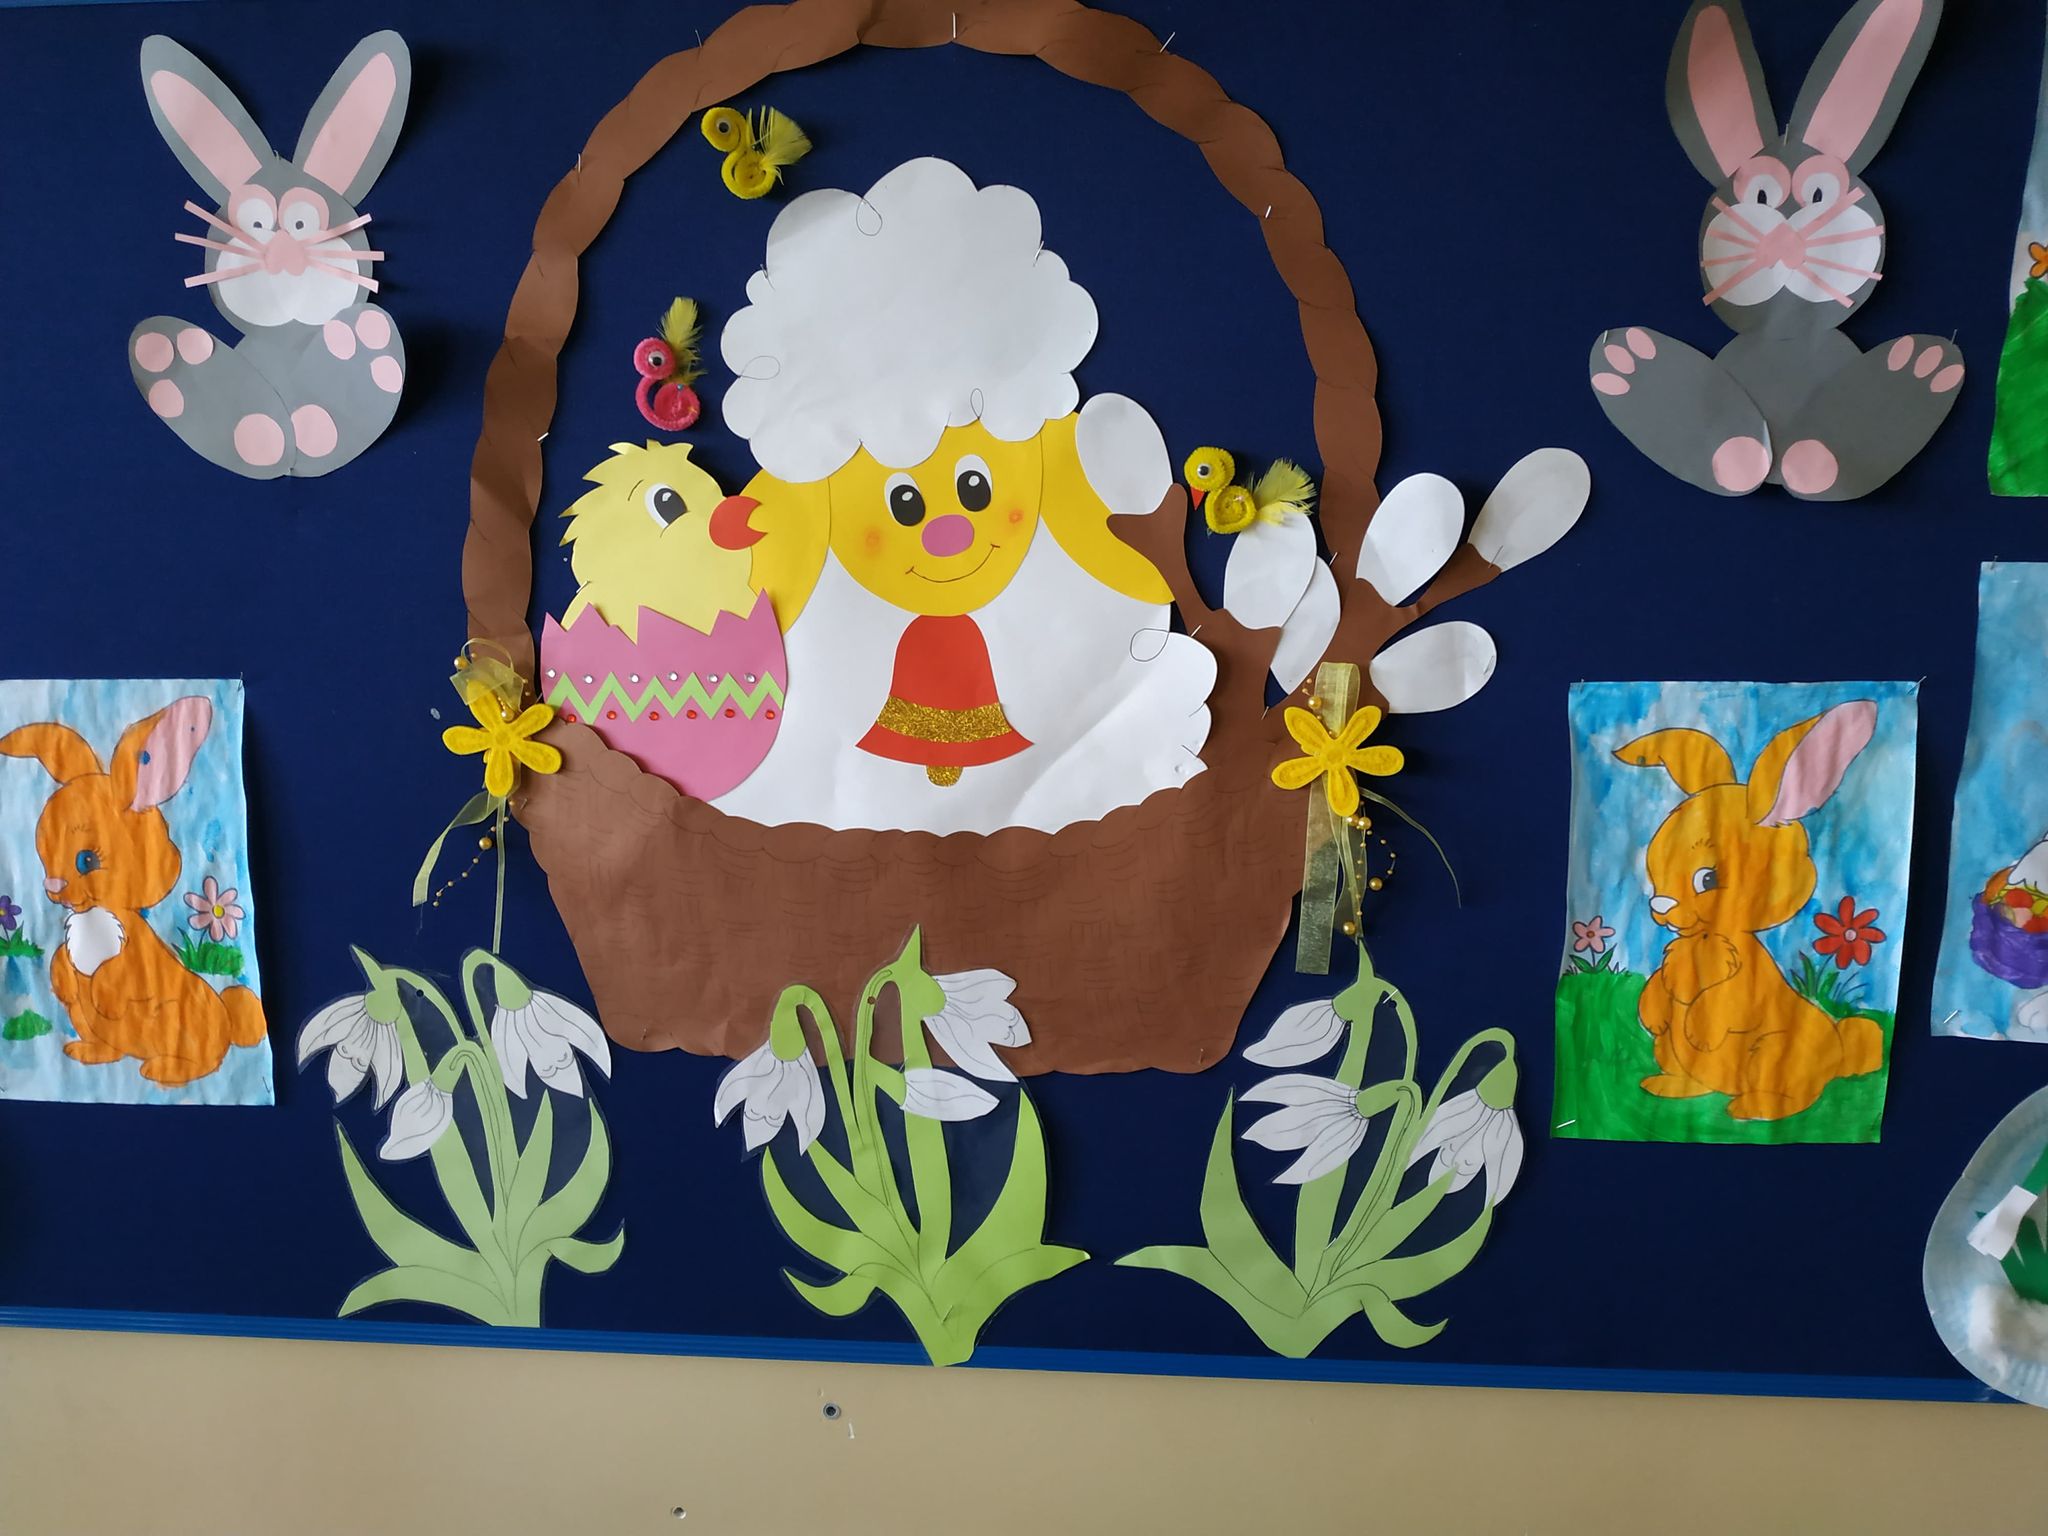 Gazetka szkolna z obrazkiem koszyczka z barankiem, kurczaczkiem i baziami. Po bokach obrazki króliczków a pod nimi kwiaty